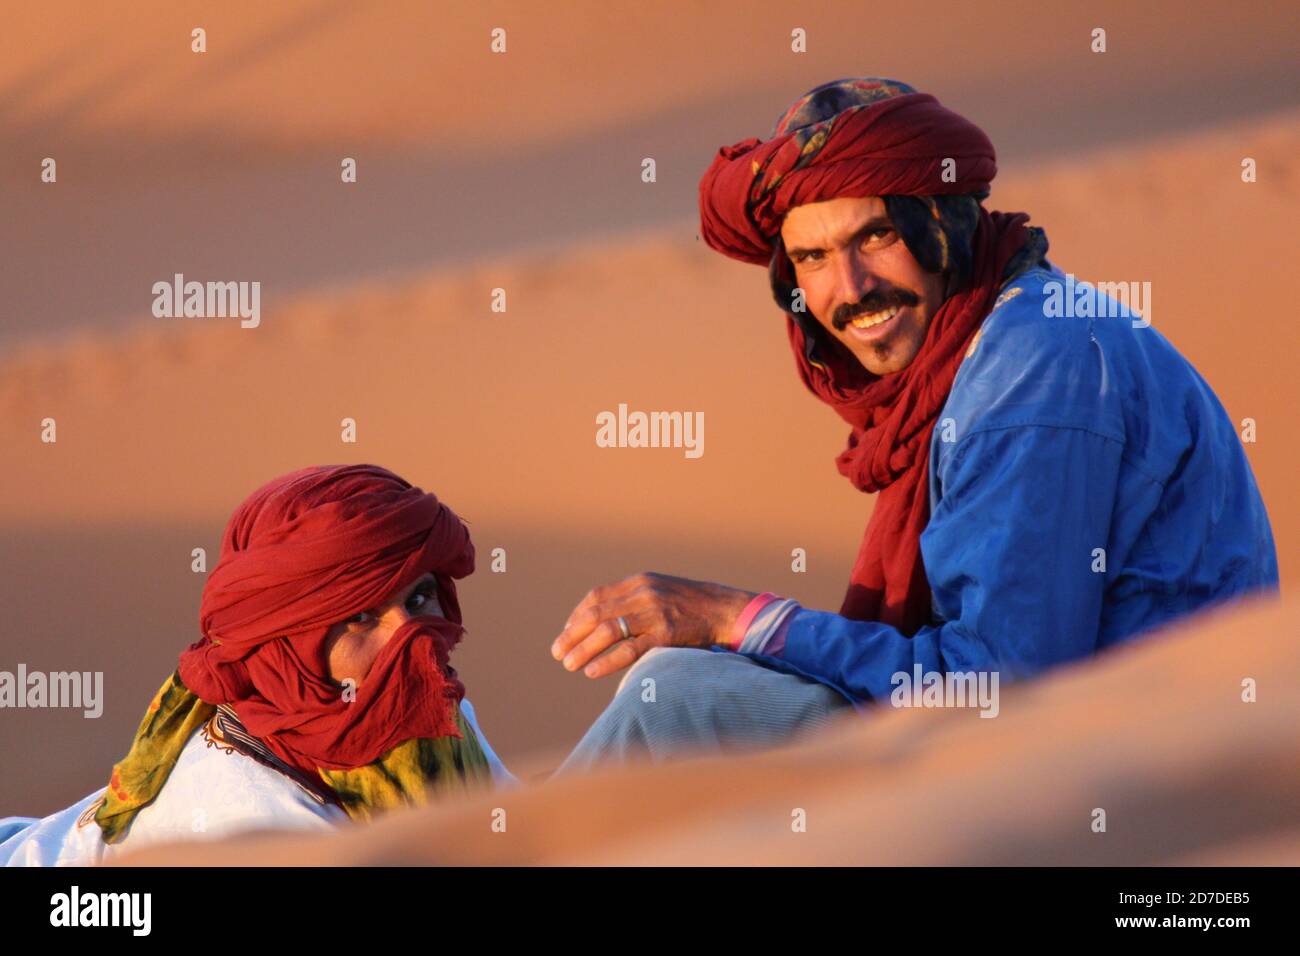 Berber Men in the Sahara Desert, Morocco Stock Photo